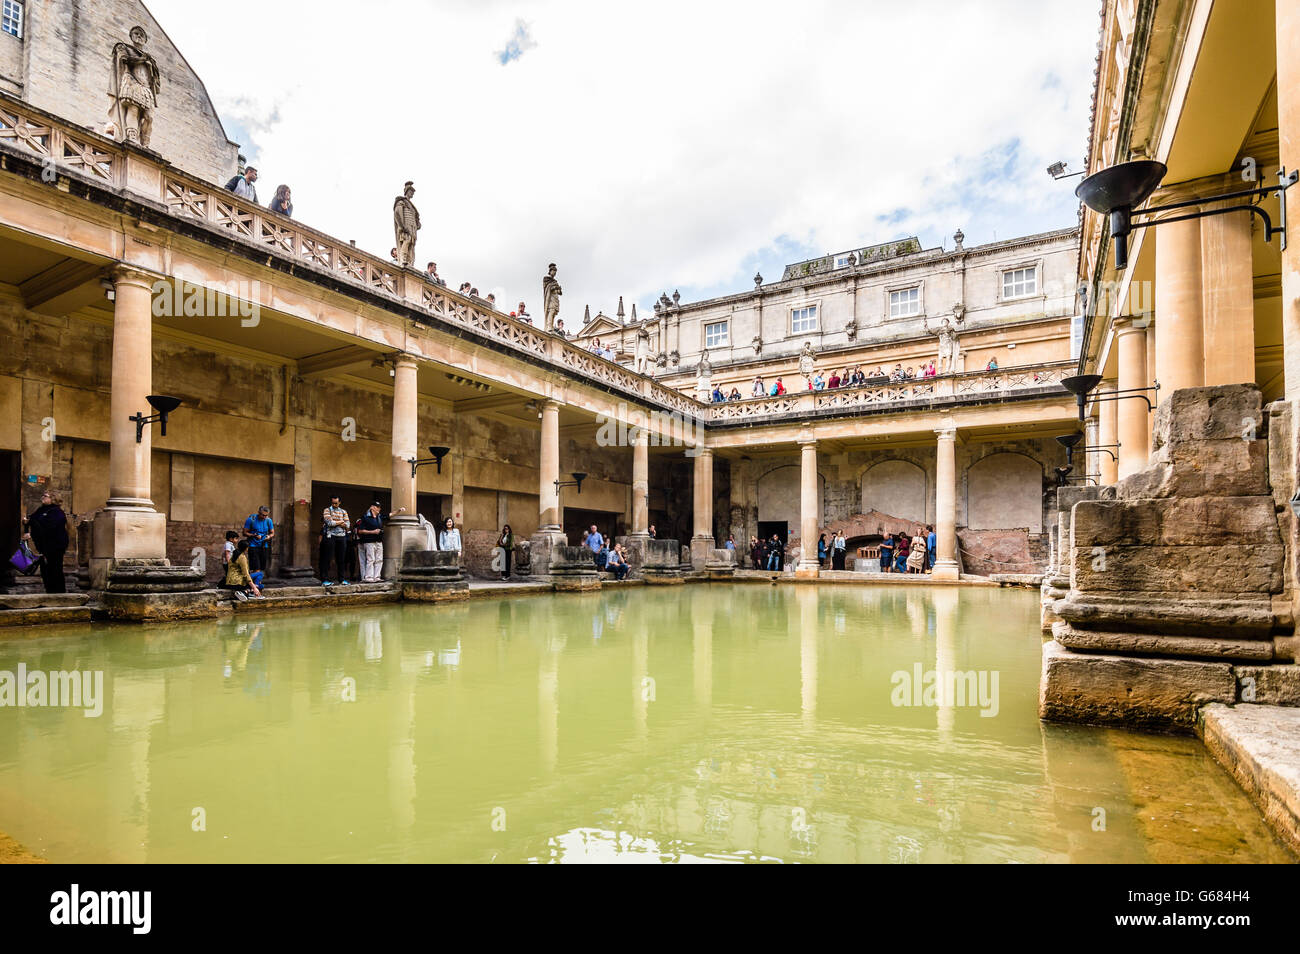 Bath, Royaume-Uni - 15 août 2015 : Les termes romains complexe est un site d'intérêt historique dans la ville anglaise de Bath. Banque D'Images